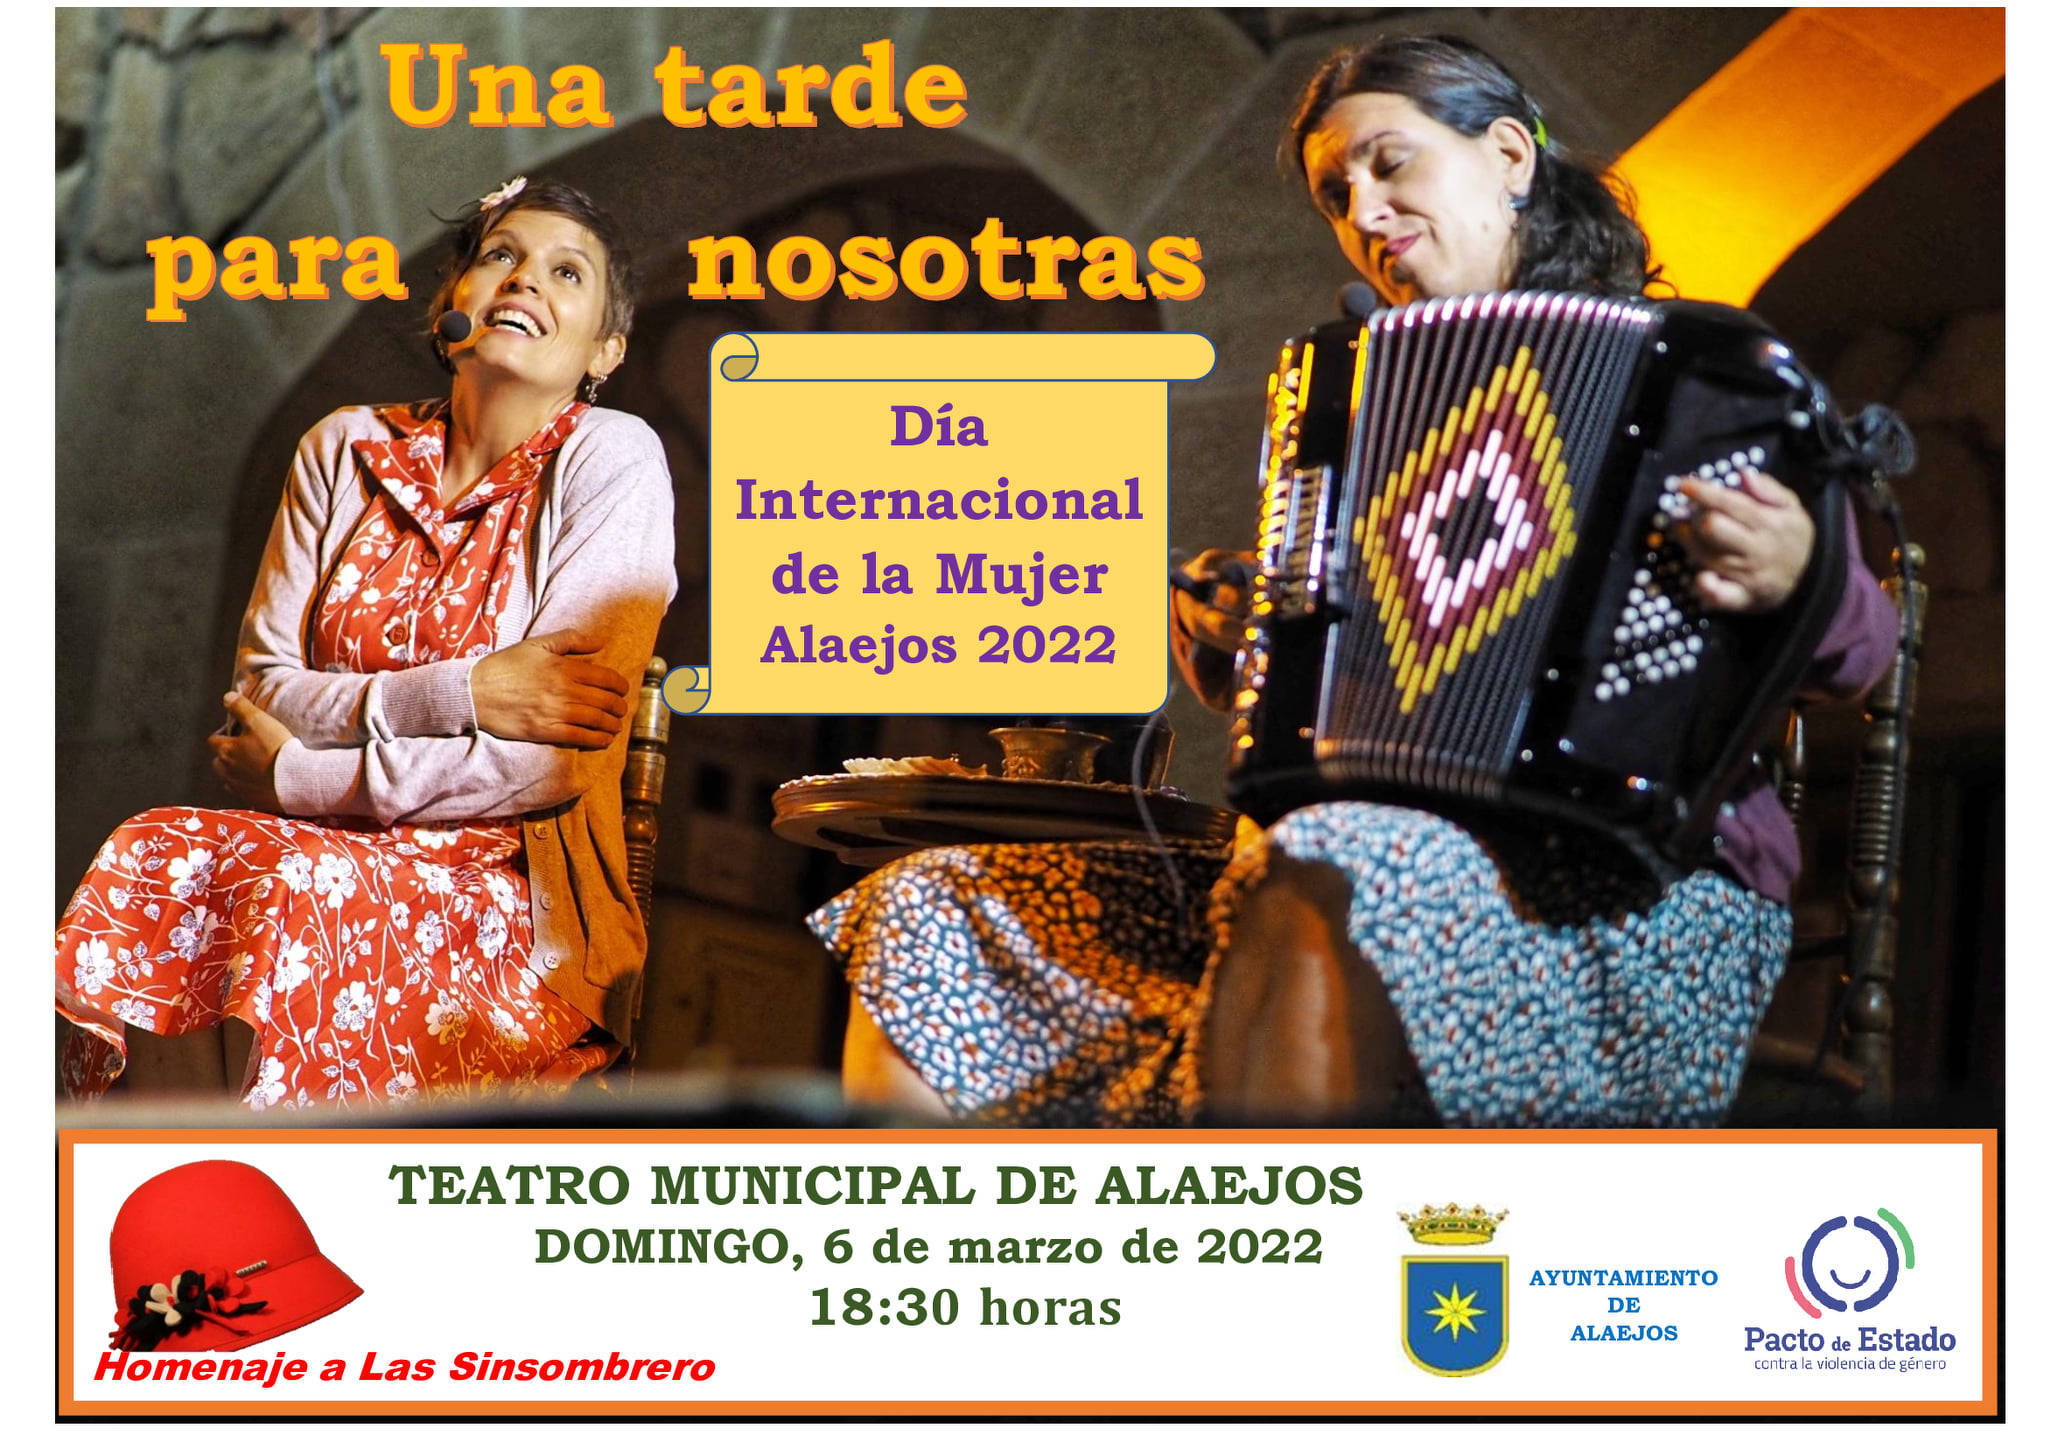 'Una tarde para nosotras' (2022) - Alaejos (Valladolid)